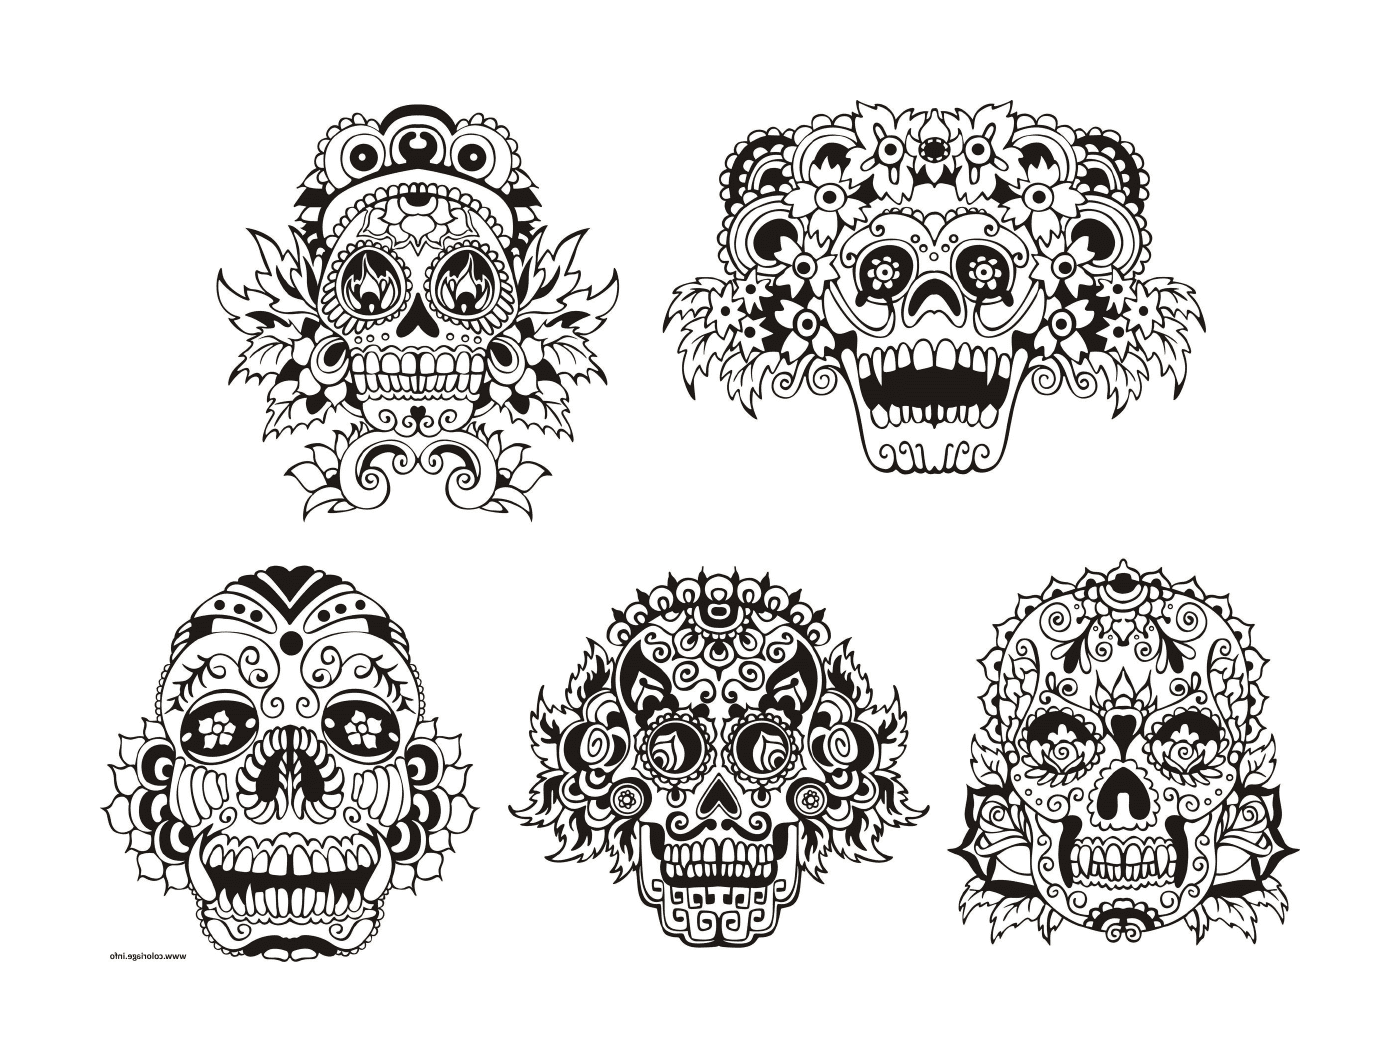  conjunto de seis dibujos de cráneo blanco y negro 